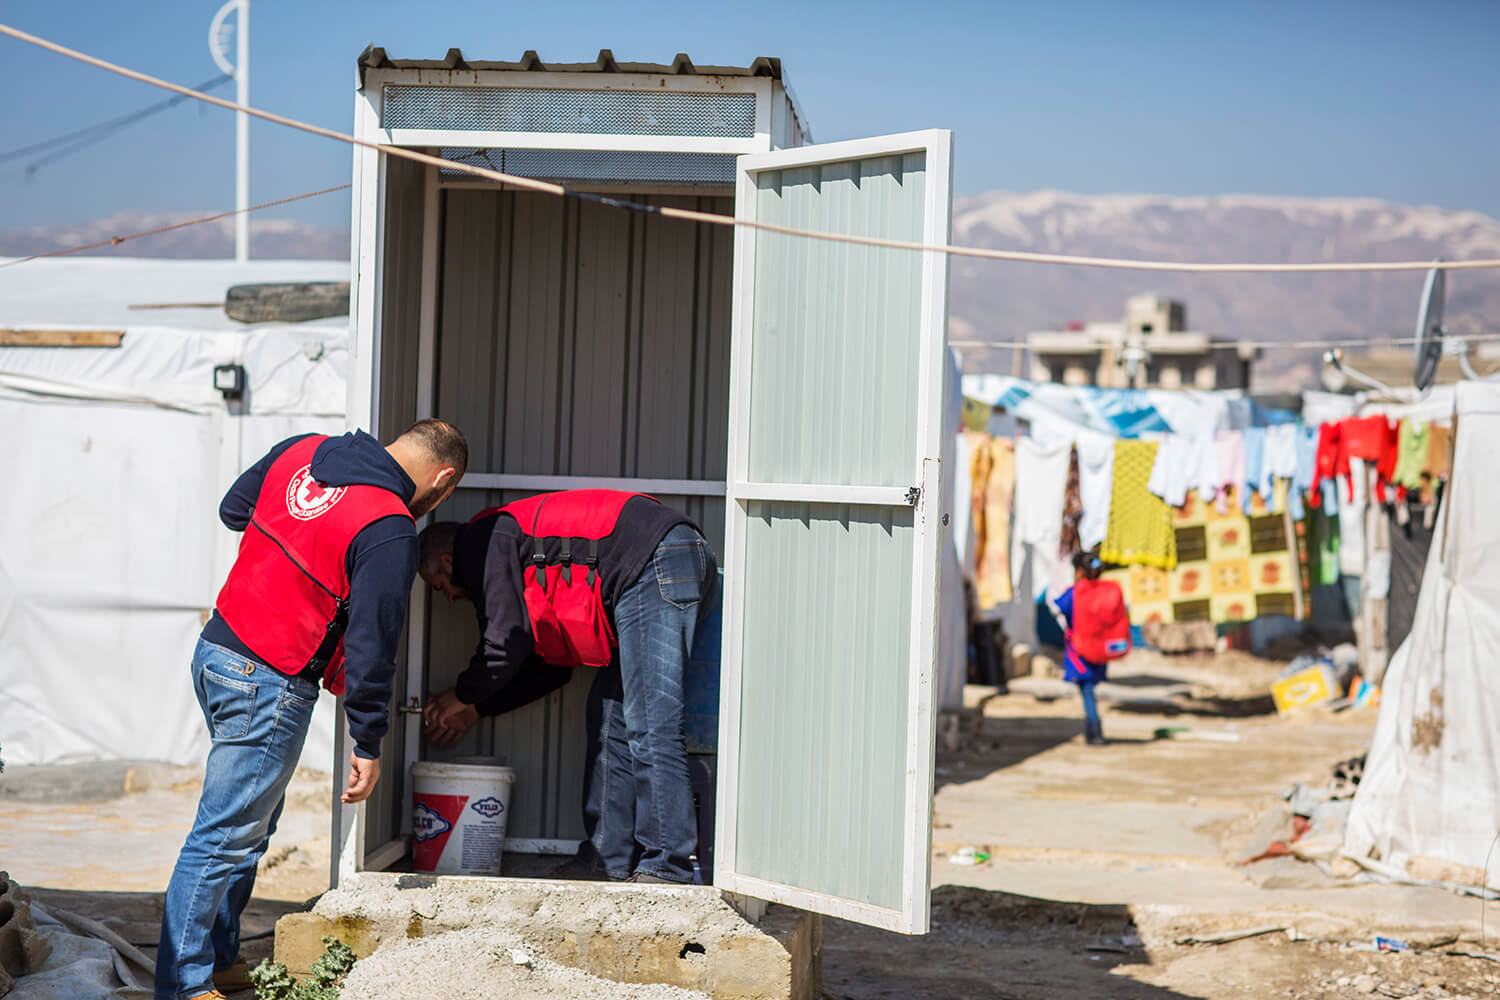 Röda Korset instalerrat latriner för syriska flyktingar_1500.jpg